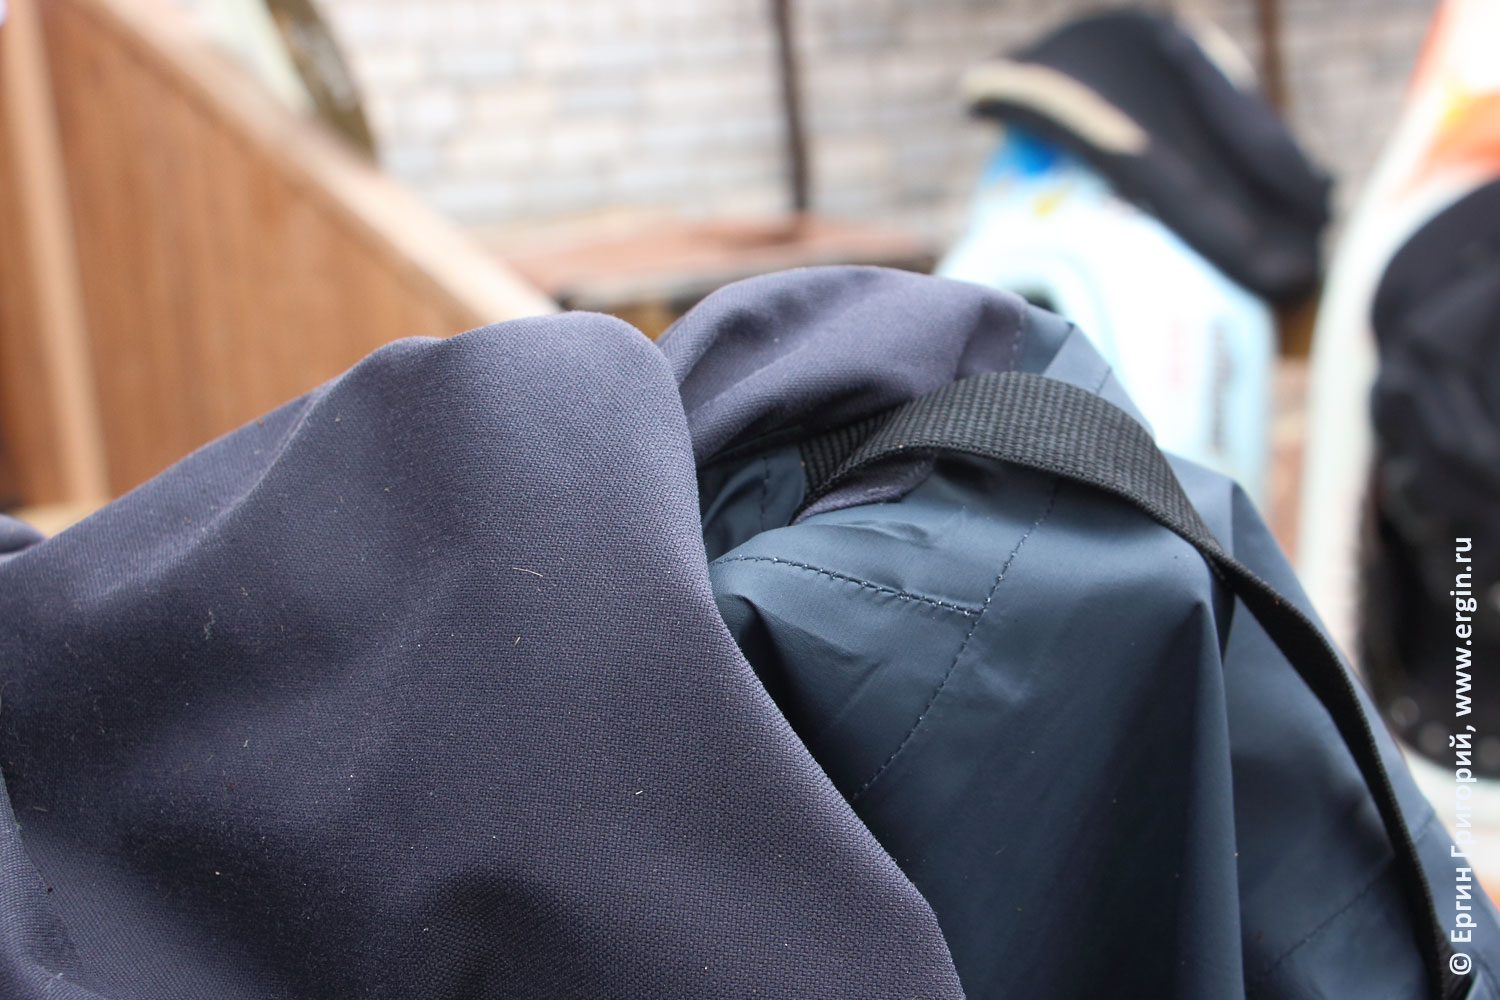 Два вида ткани мембранная и кордура для сухого костюма водника каякера байдарочника российского бренда "Вода"